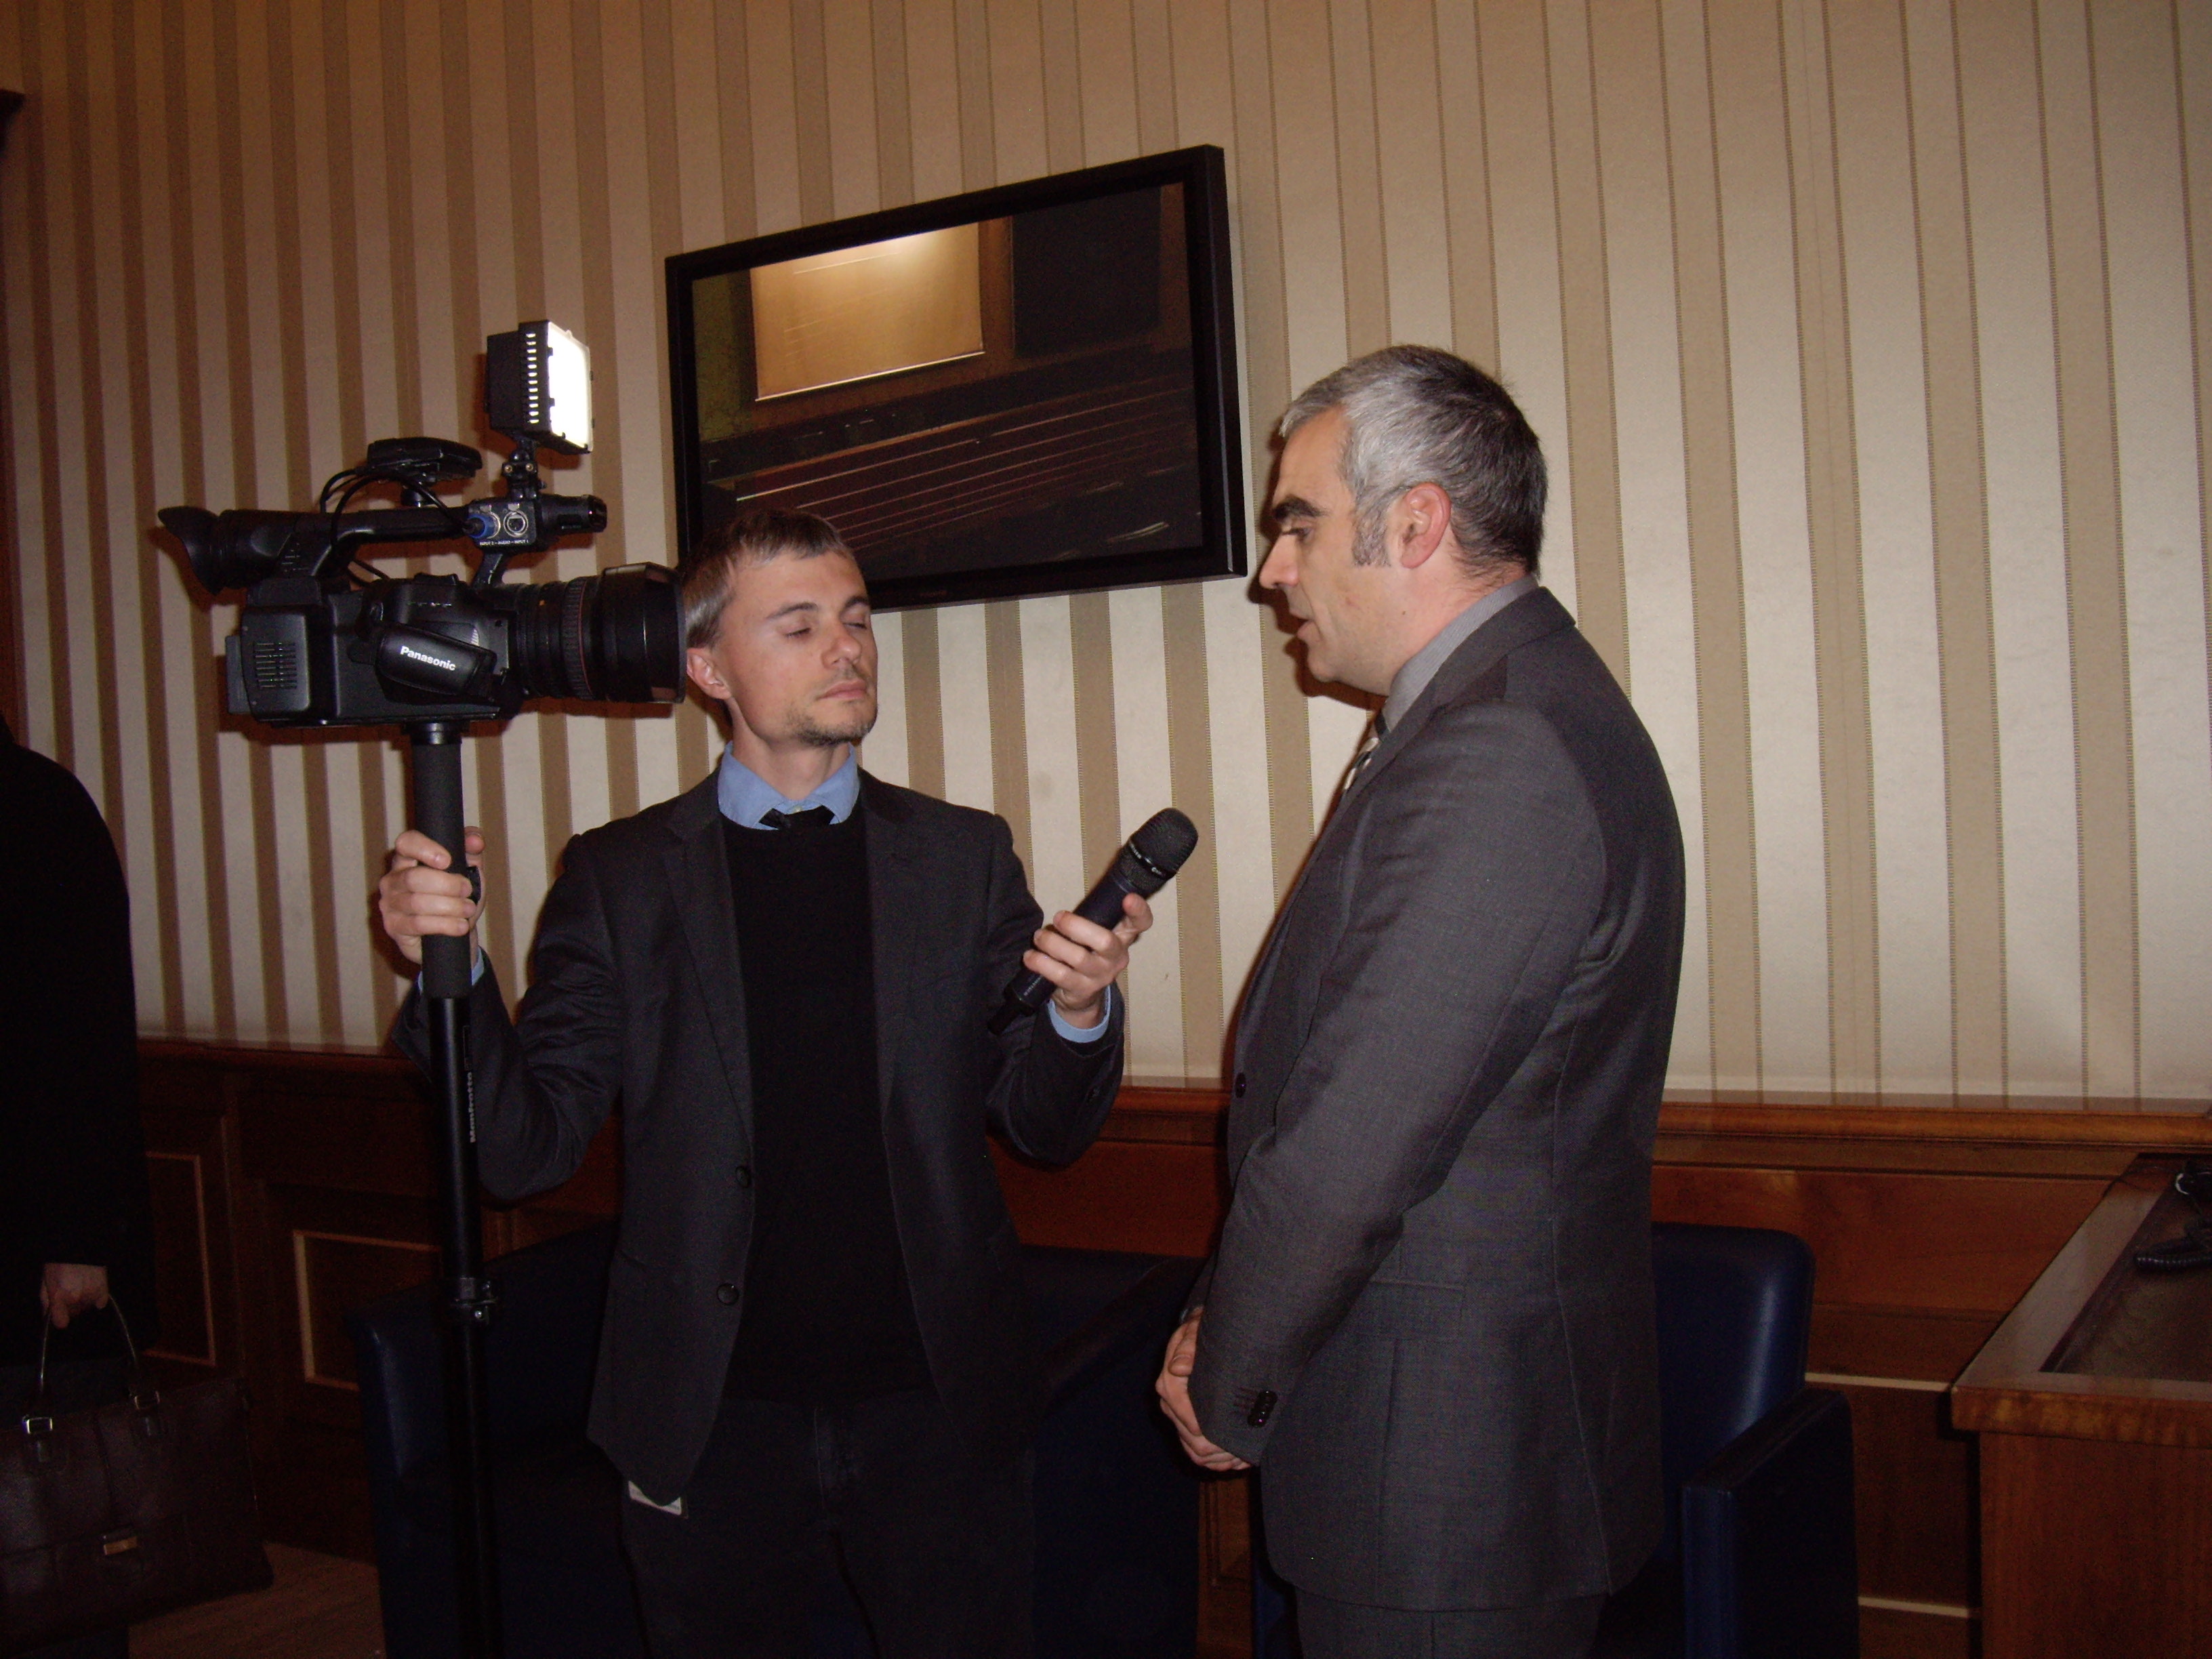  Marco Costa intervistato dalla televisione del Senato